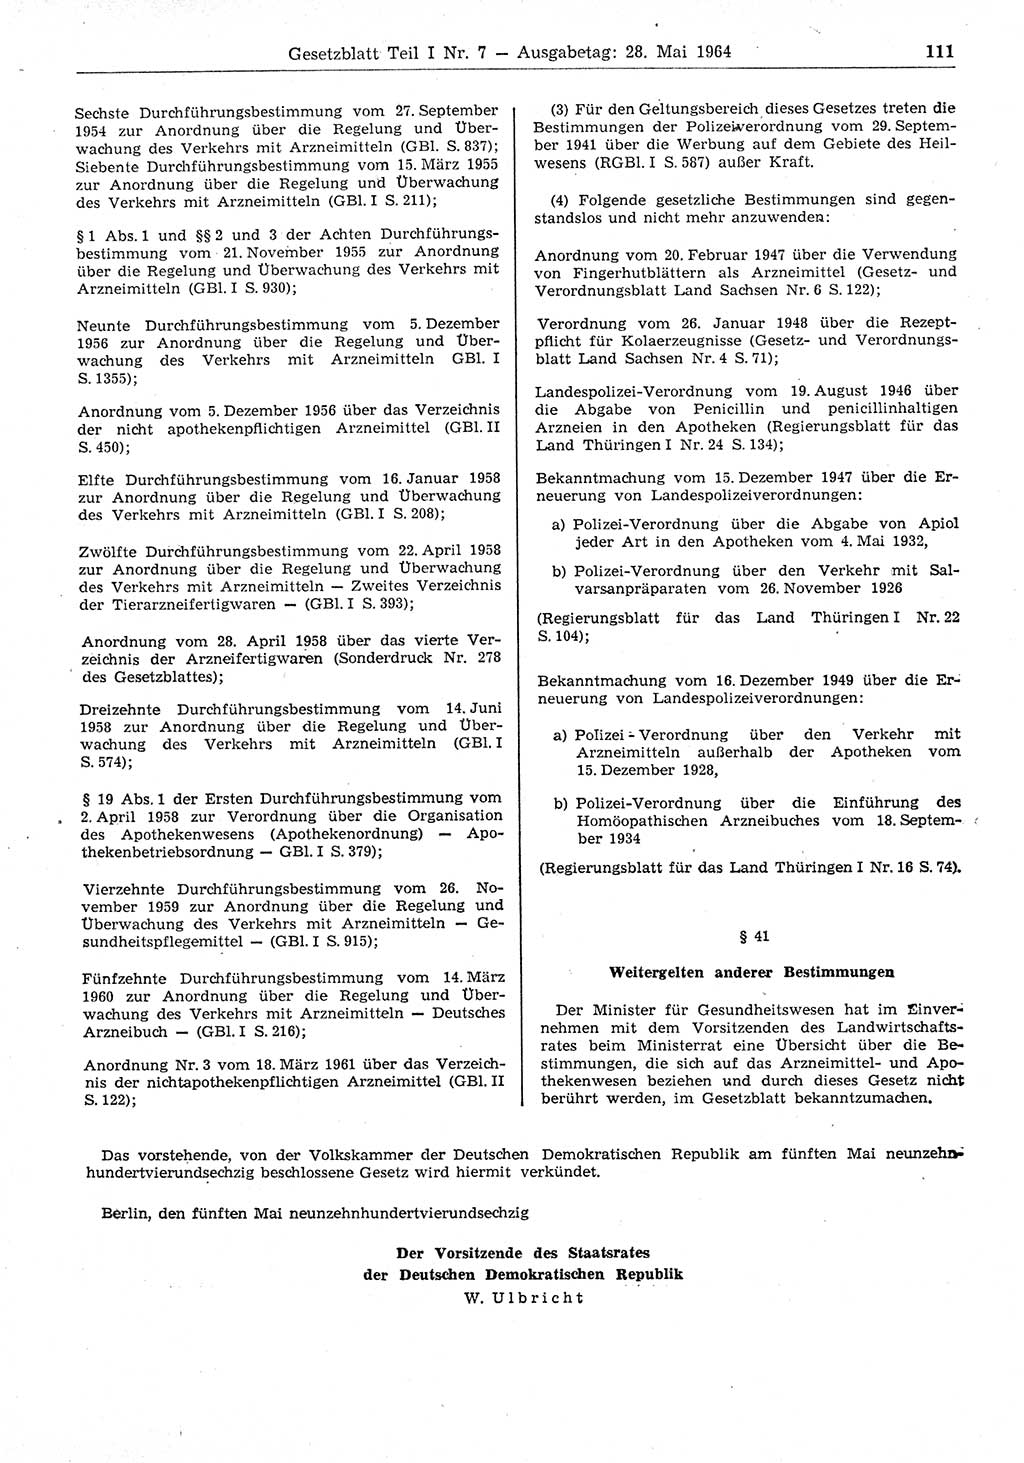 Gesetzblatt (GBl.) der Deutschen Demokratischen Republik (DDR) Teil Ⅰ 1964, Seite 111 (GBl. DDR Ⅰ 1964, S. 111)